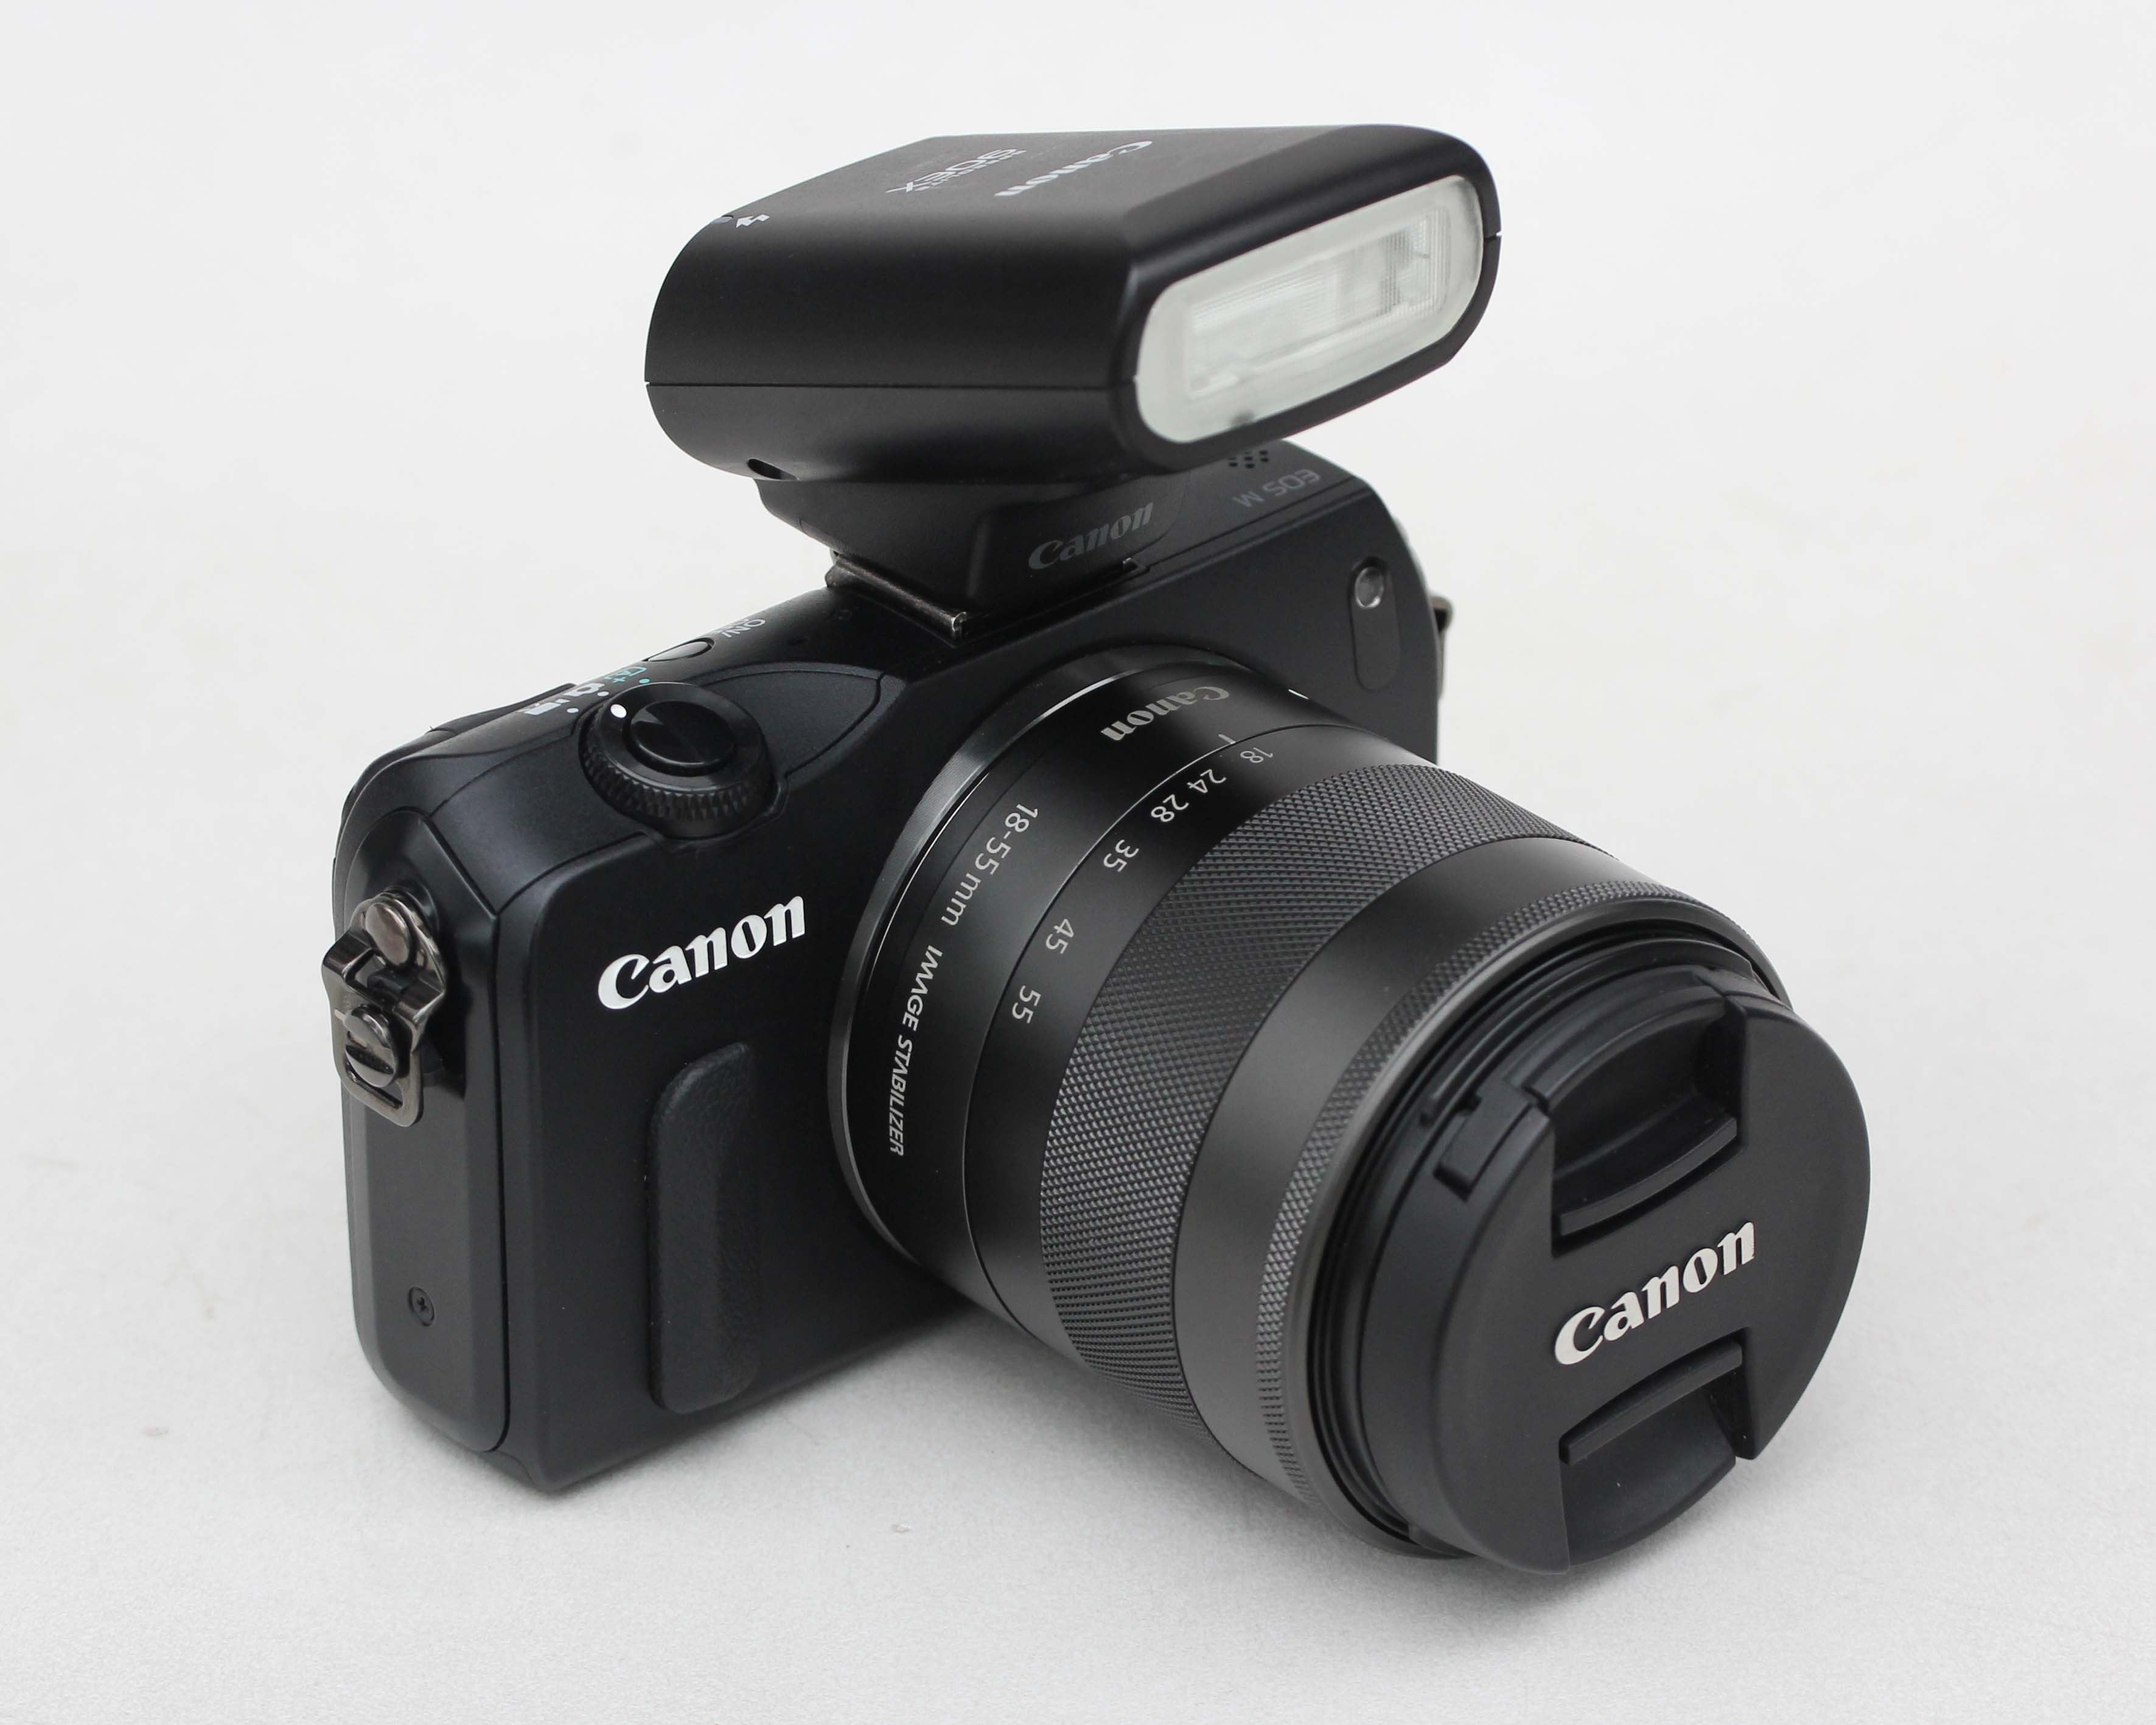 Canon EOS M + len 15-45mm IS STM